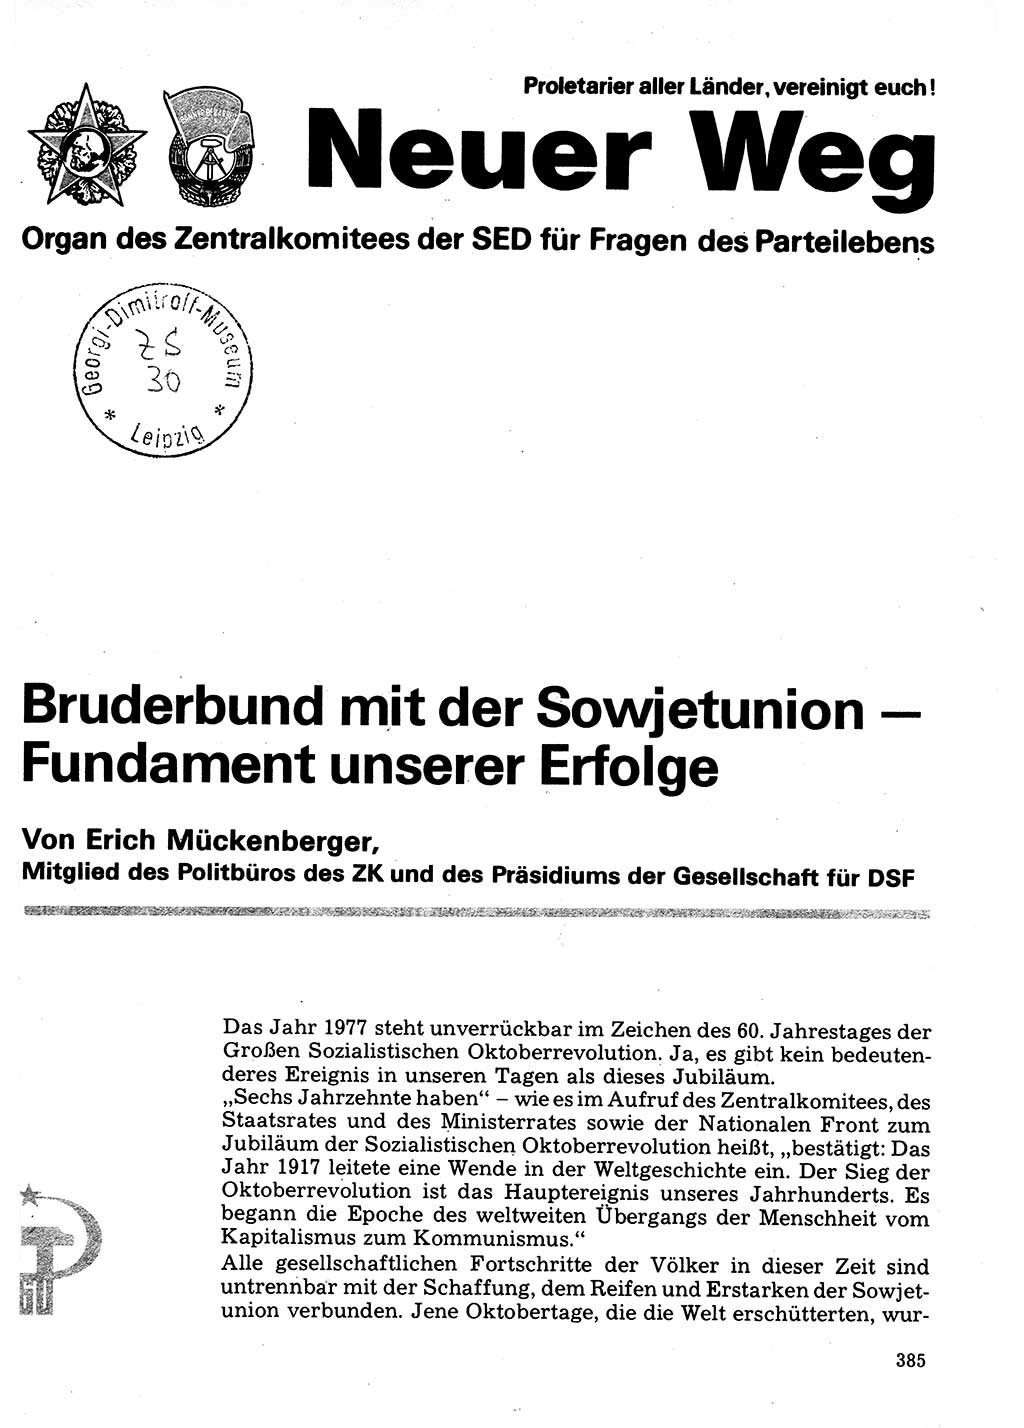 Neuer Weg (NW), Organ des Zentralkomitees (ZK) der SED (Sozialistische Einheitspartei Deutschlands) für Fragen des Parteilebens, 32. Jahrgang [Deutsche Demokratische Republik (DDR)] 1977, Seite 385 (NW ZK SED DDR 1977, S. 385)